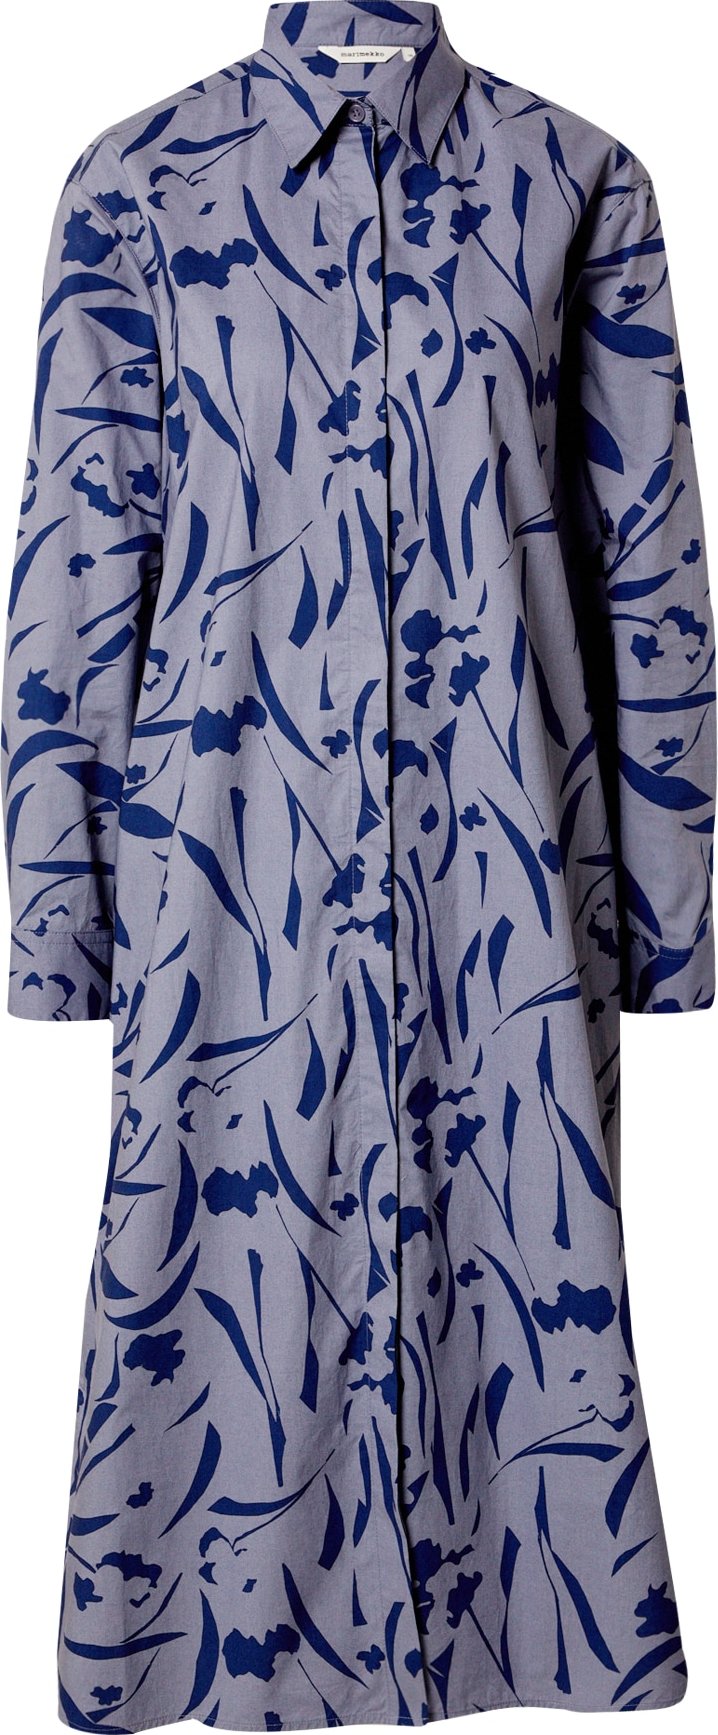 Marimekko Košilové šaty 'Runoelma' námořnická modř / šedá